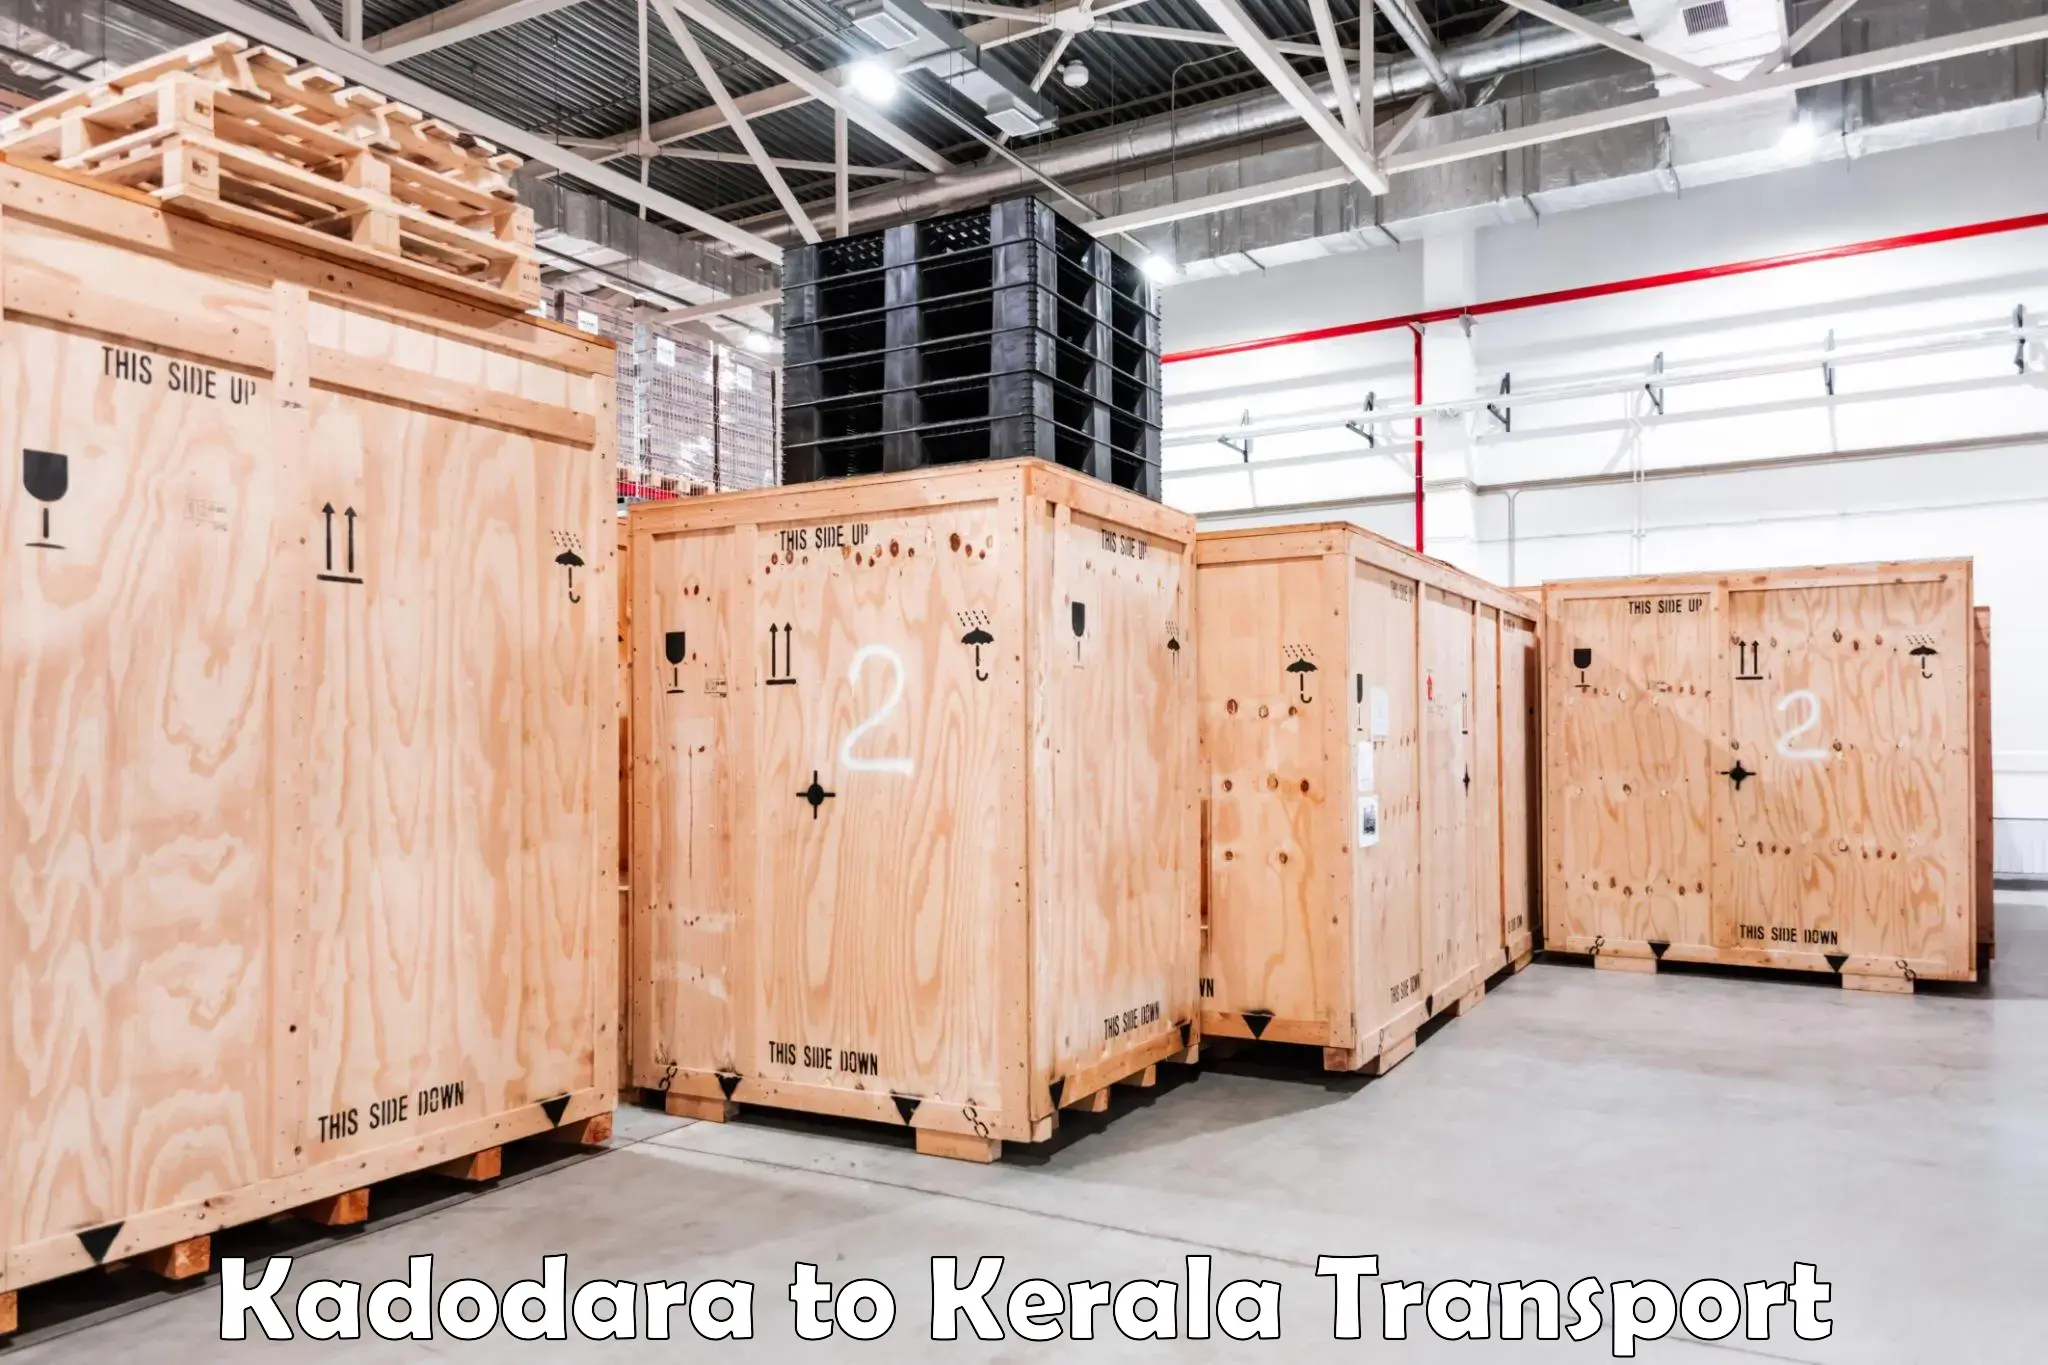 Express transport services Kadodara to Payyanur